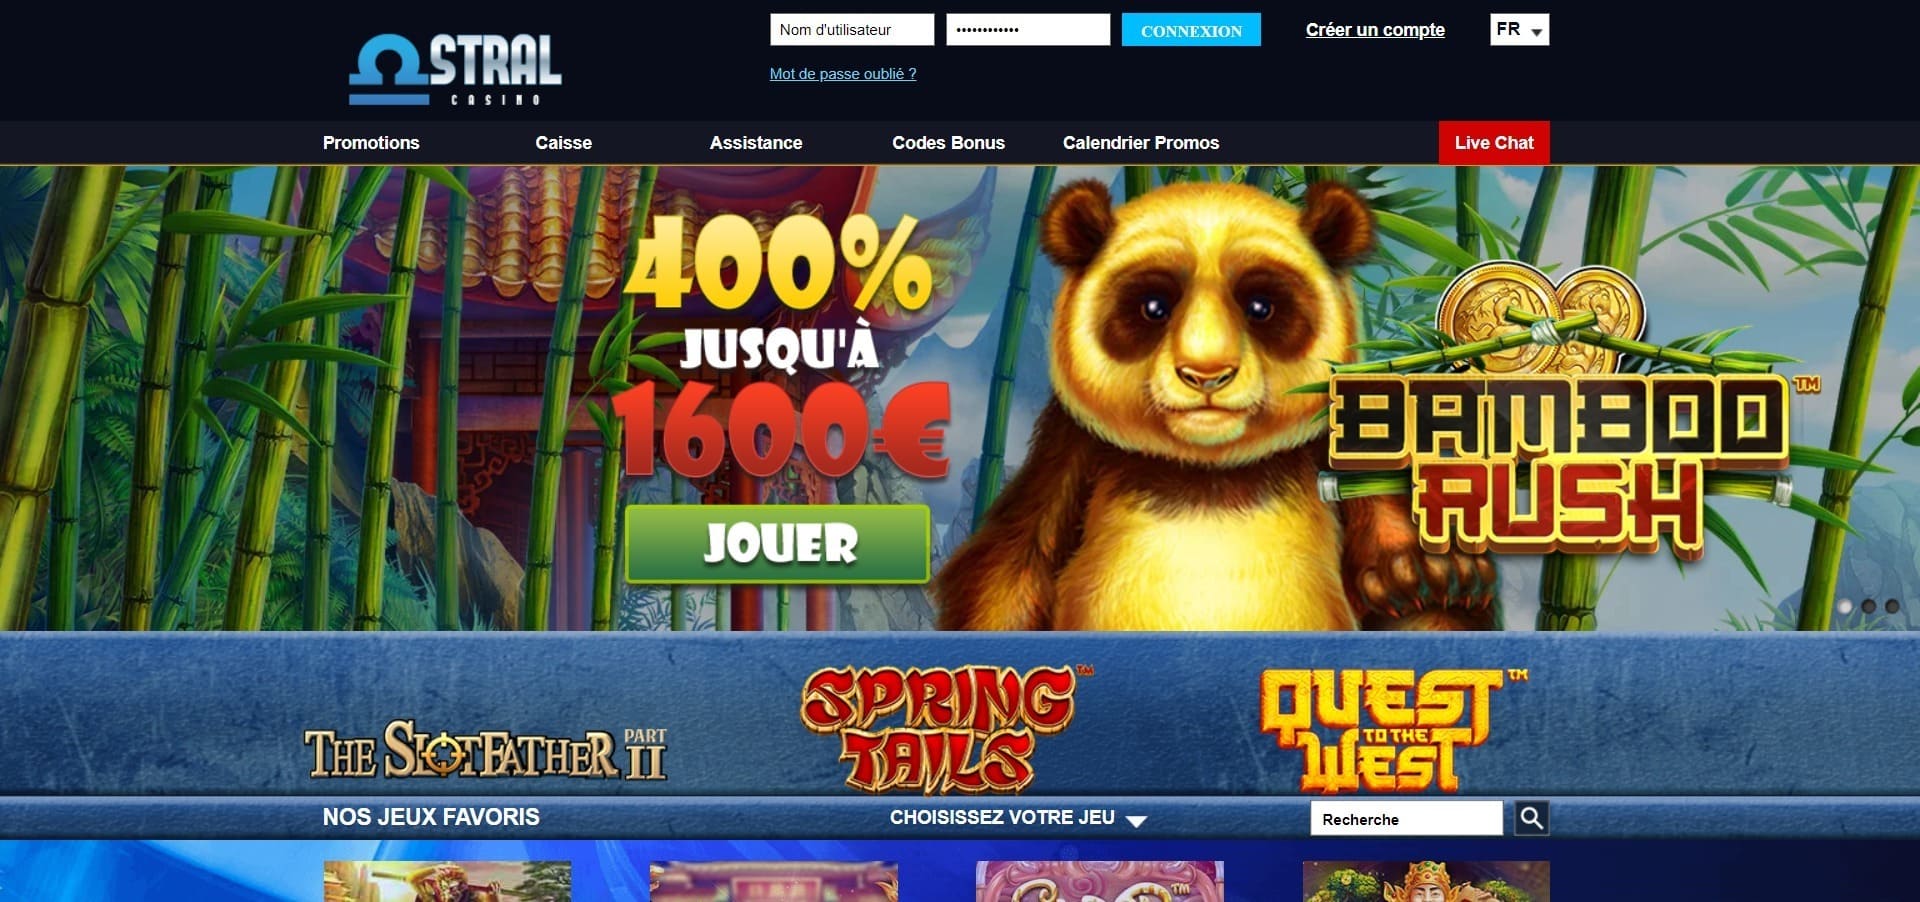 Site officiel de Astral Casino